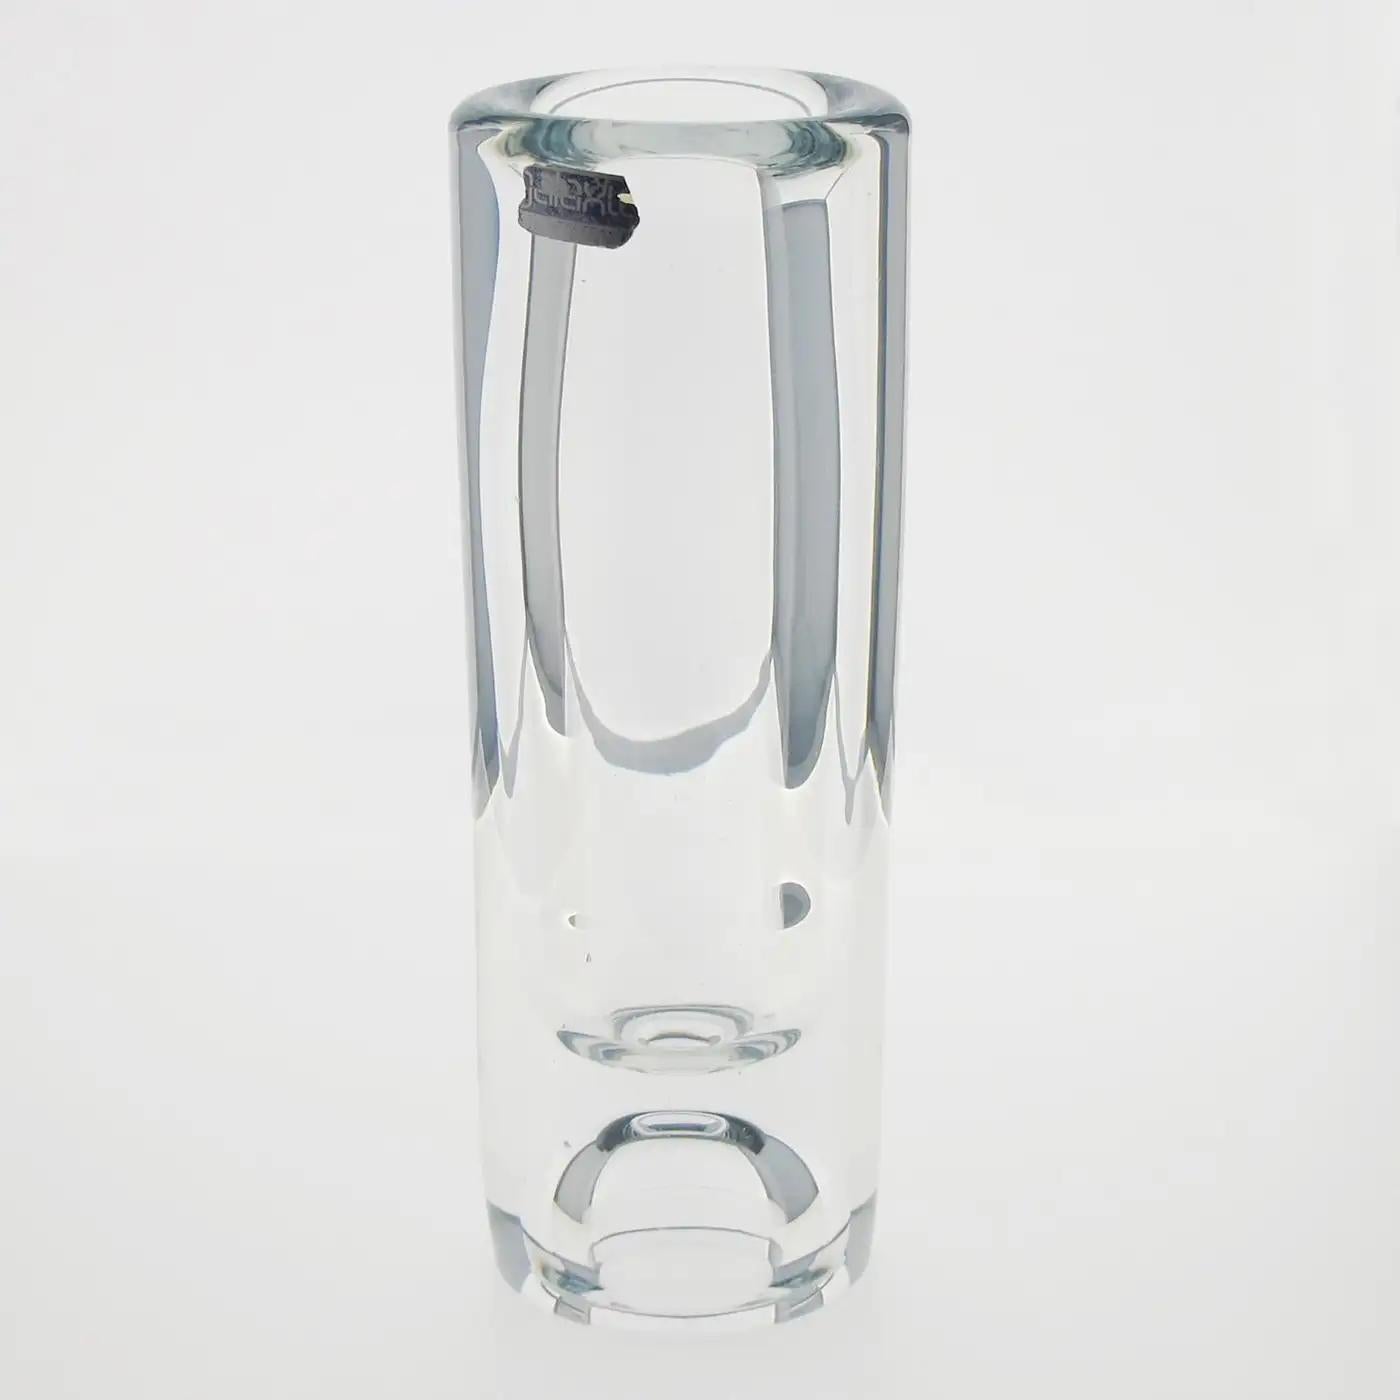 La Compagnie Française du Cristal De Belroy pour Daum a produit ce vase en cristal moderniste, vers 1970. Le design moderne et mince a une base épaisse et une forme de gobelet. Le vase a encore son étiquette d'origine sur le côté. Ce vase fait